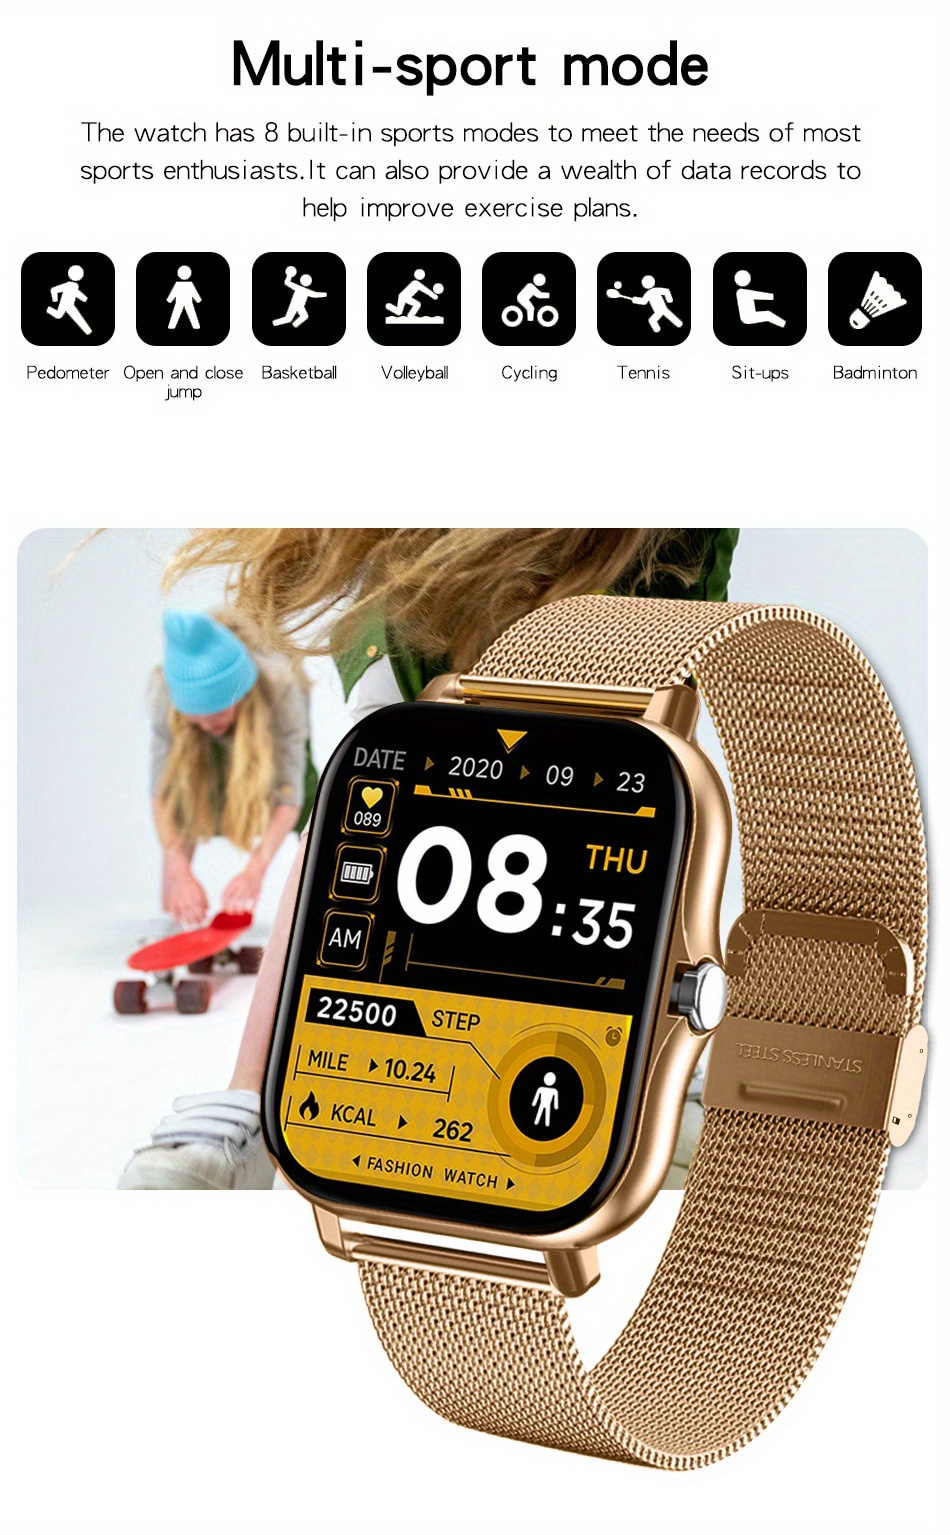 El nuevo smartwatch de Louis Vuitton tiene todo lo que esperas de un  smartwatch, pero es más elegante